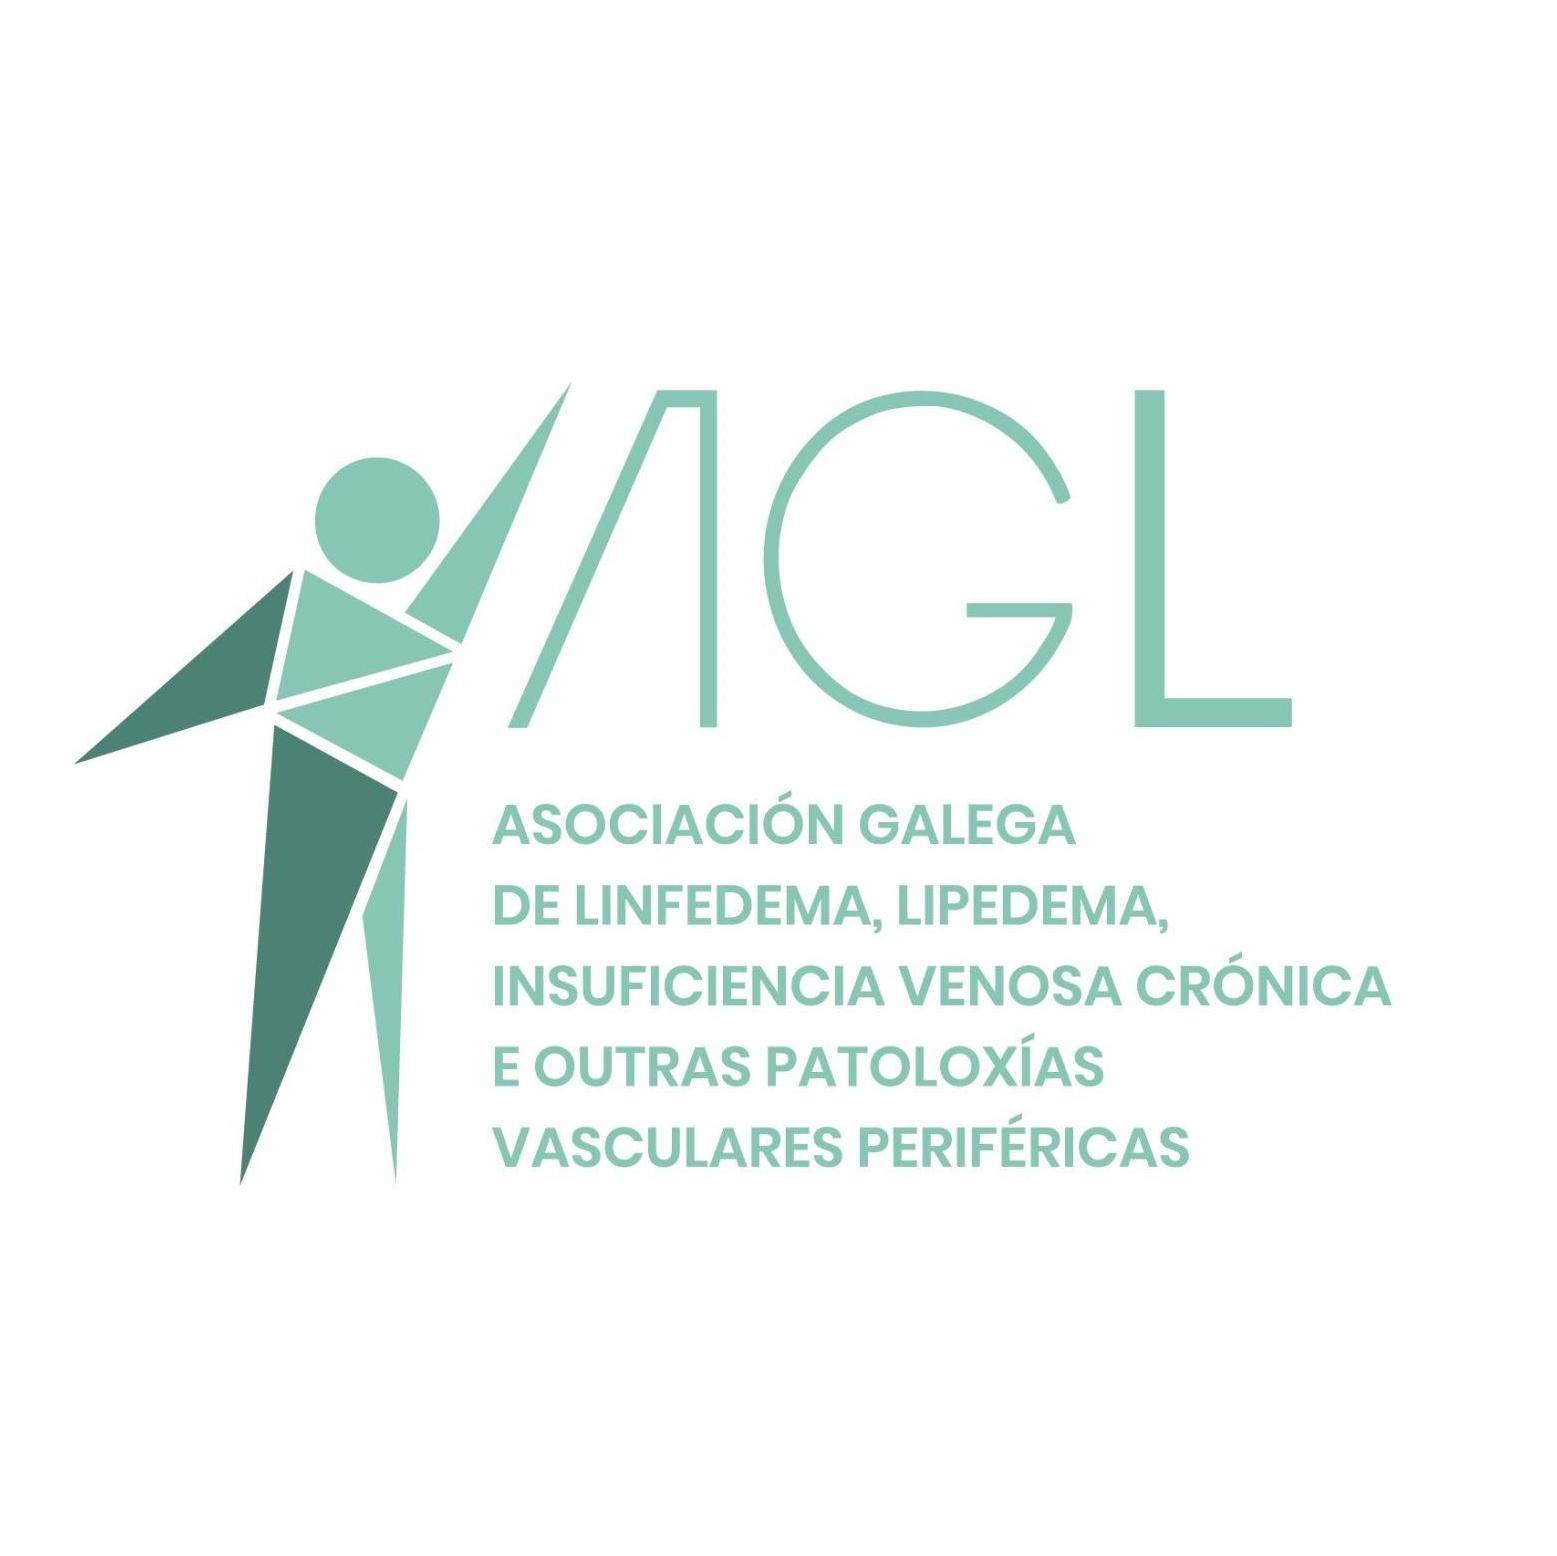 Asociación Galega de Linfedema, Lipedema, Insuficiencia Venosa Crónica - Su perfil. Votar, valora y comunicate